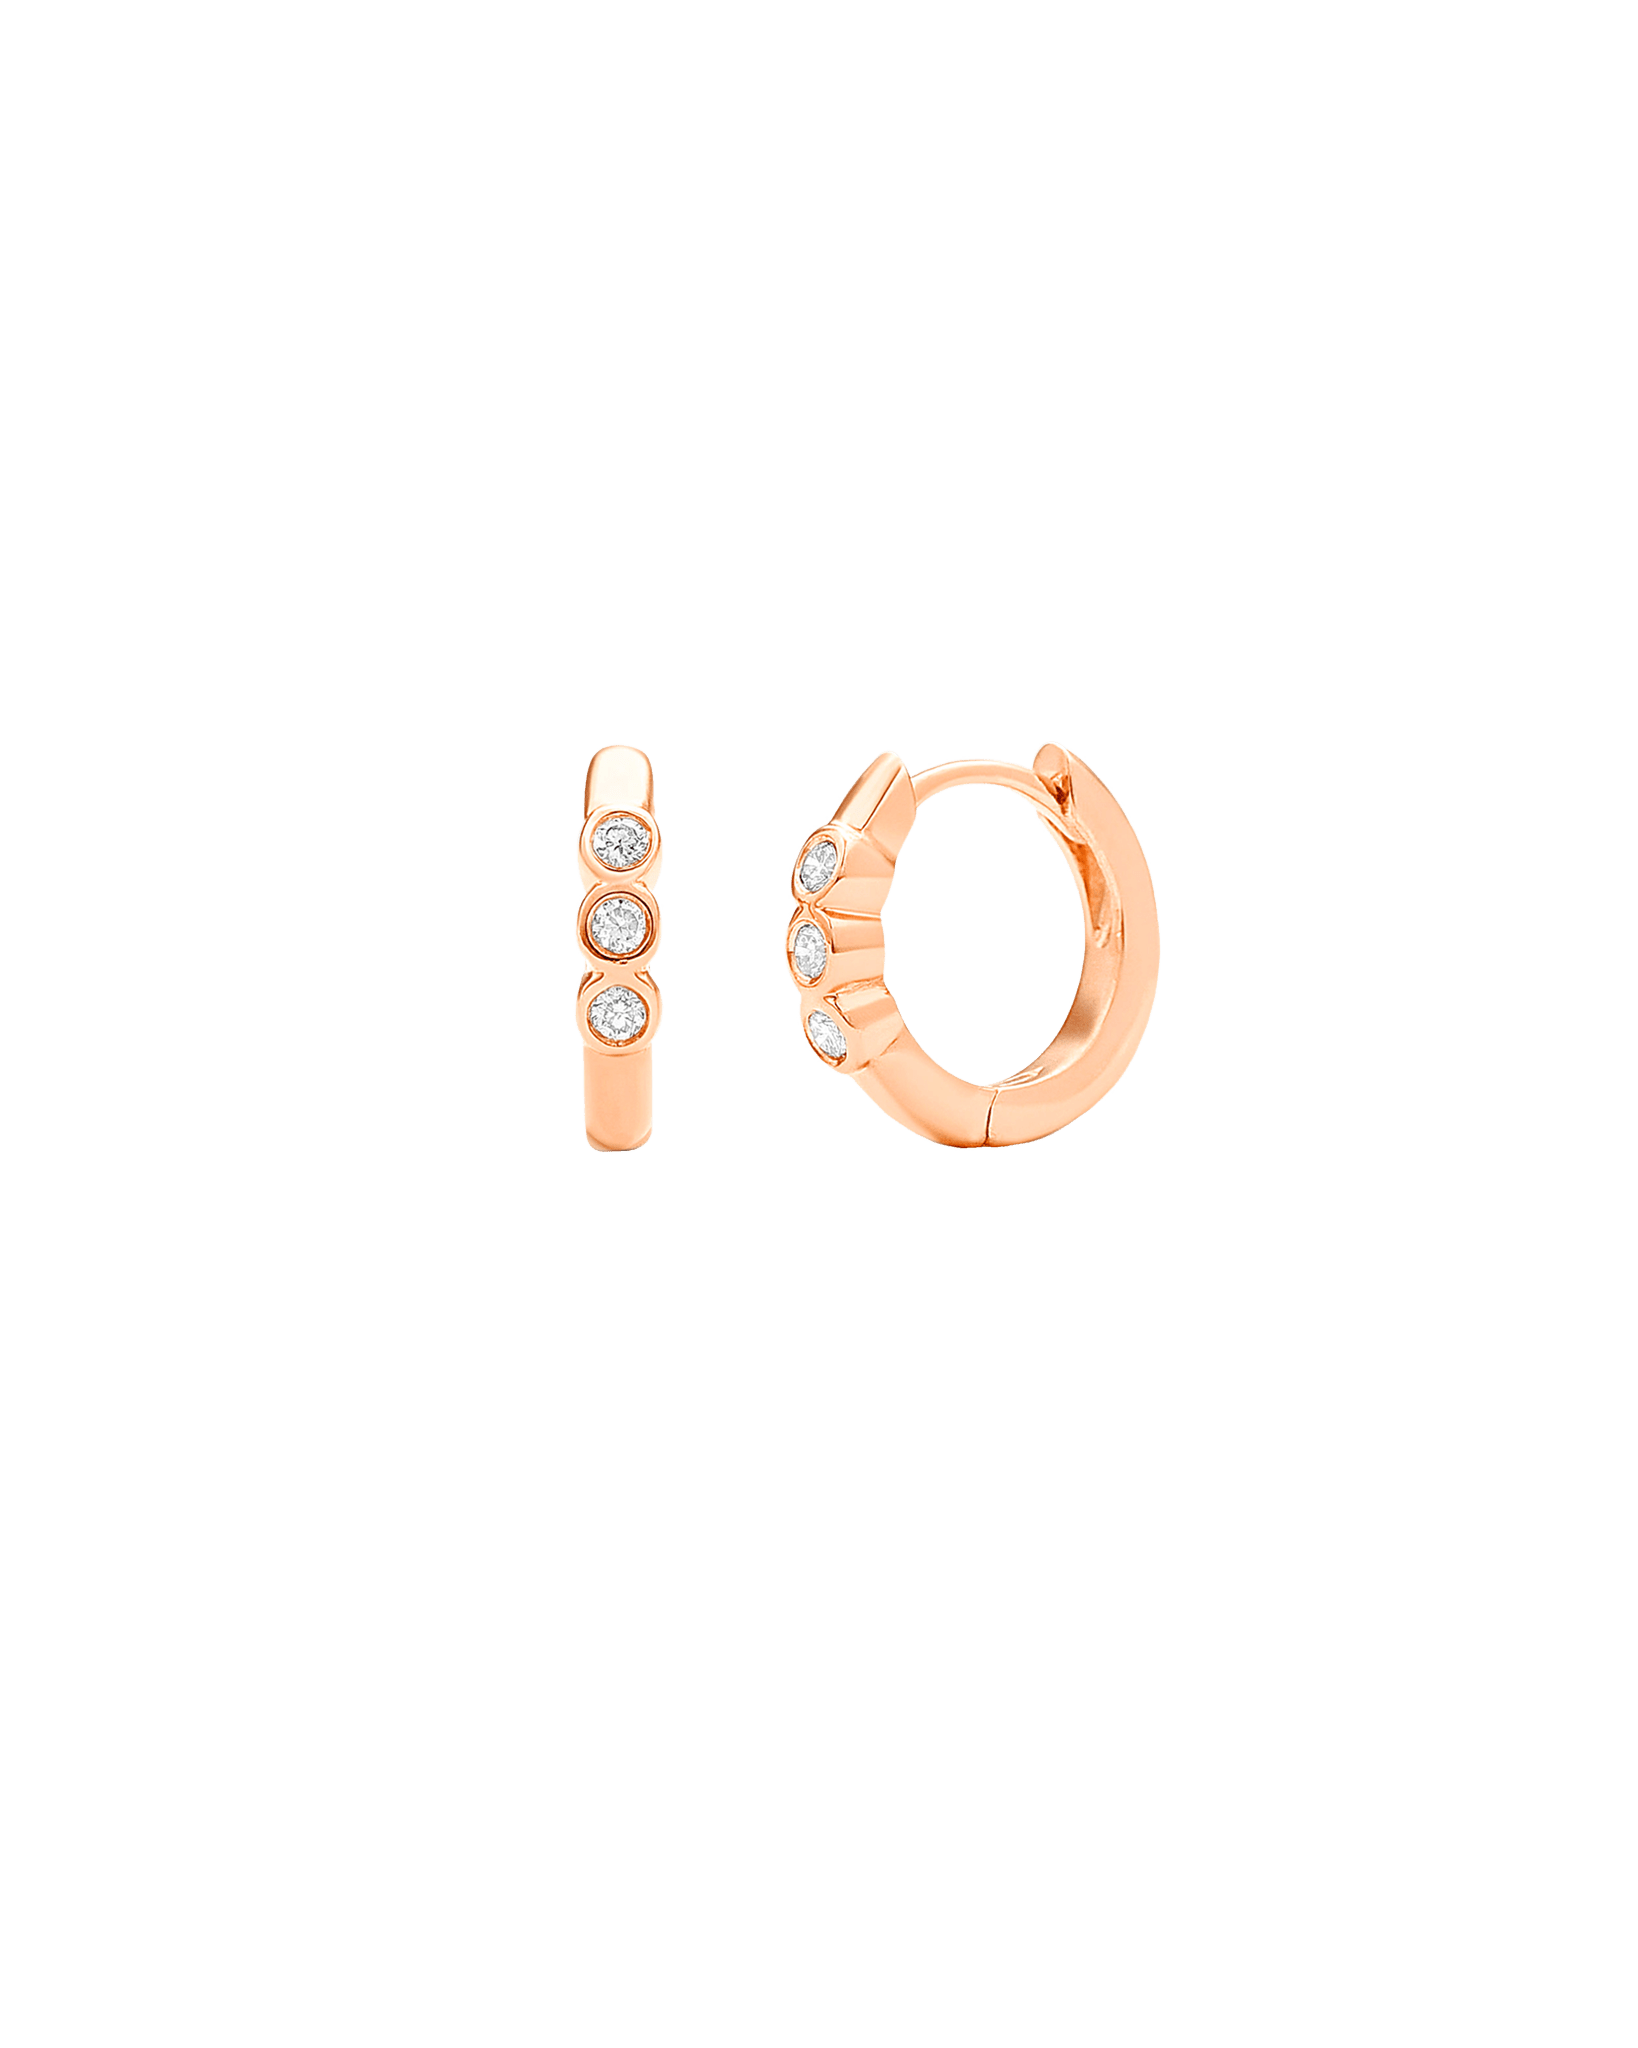 3 Dot Diamond Earrings - 14K Rose Gold Earrings magal-dev 